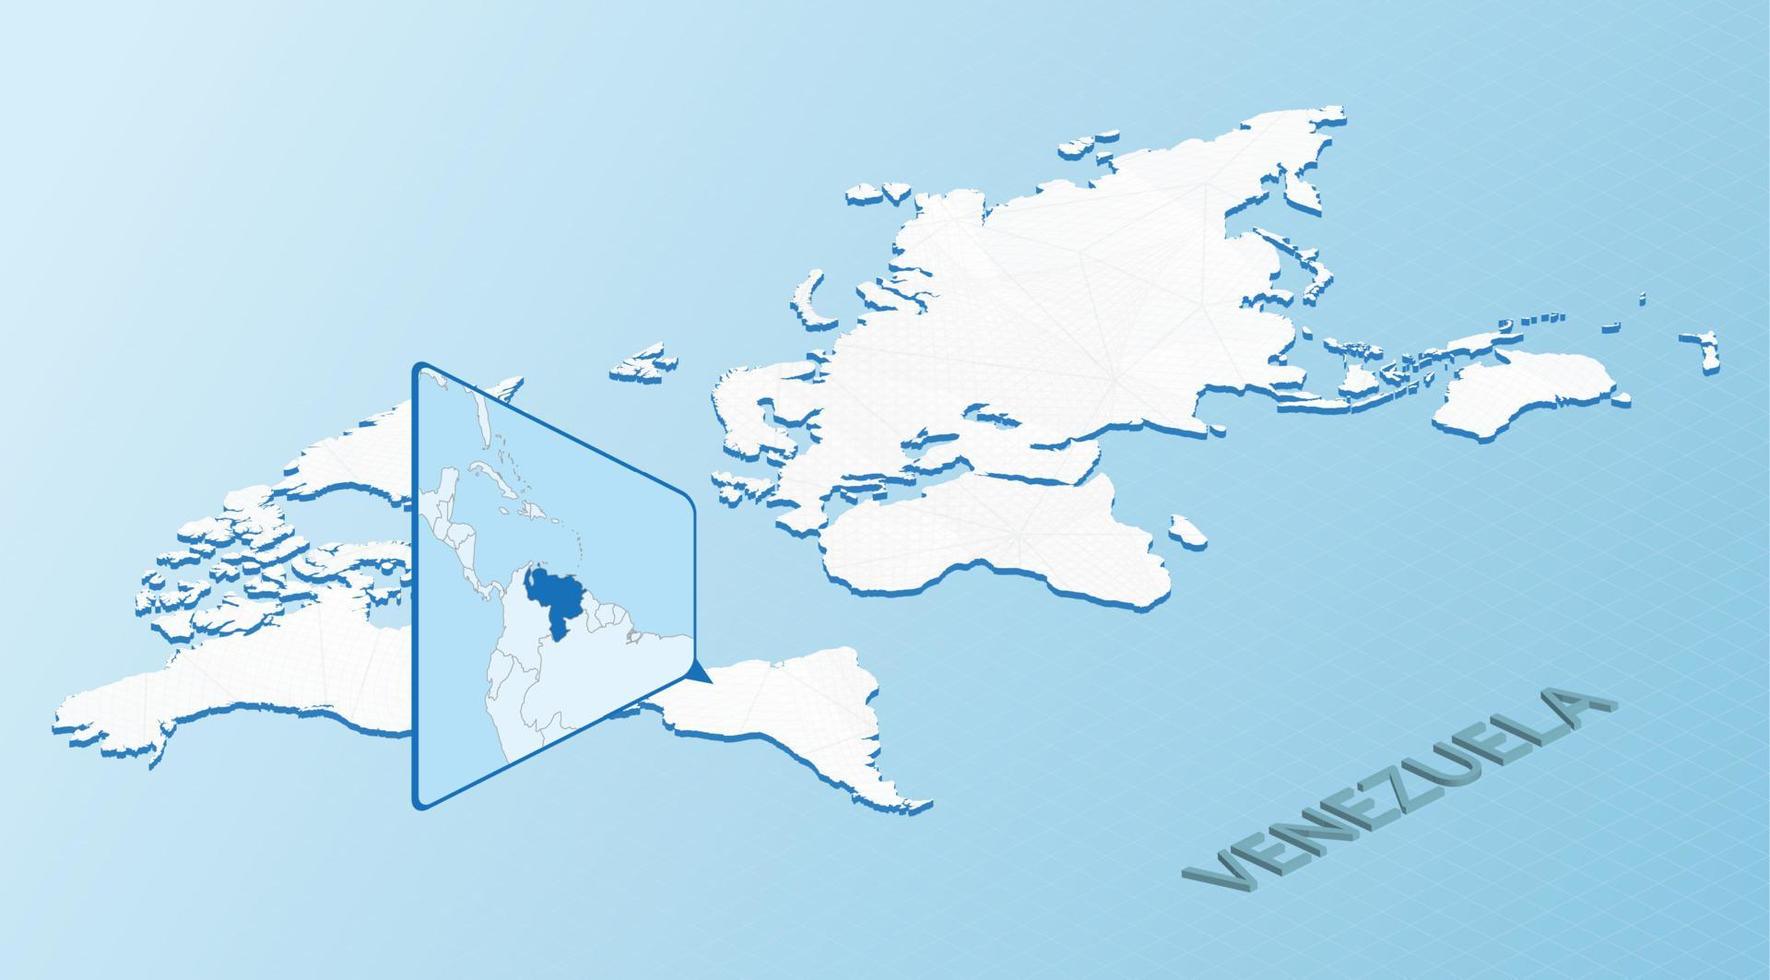 mapa-múndi em estilo isométrico com mapa detalhado da venezuela. mapa azul claro da venezuela com mapa-múndi abstrato. vetor